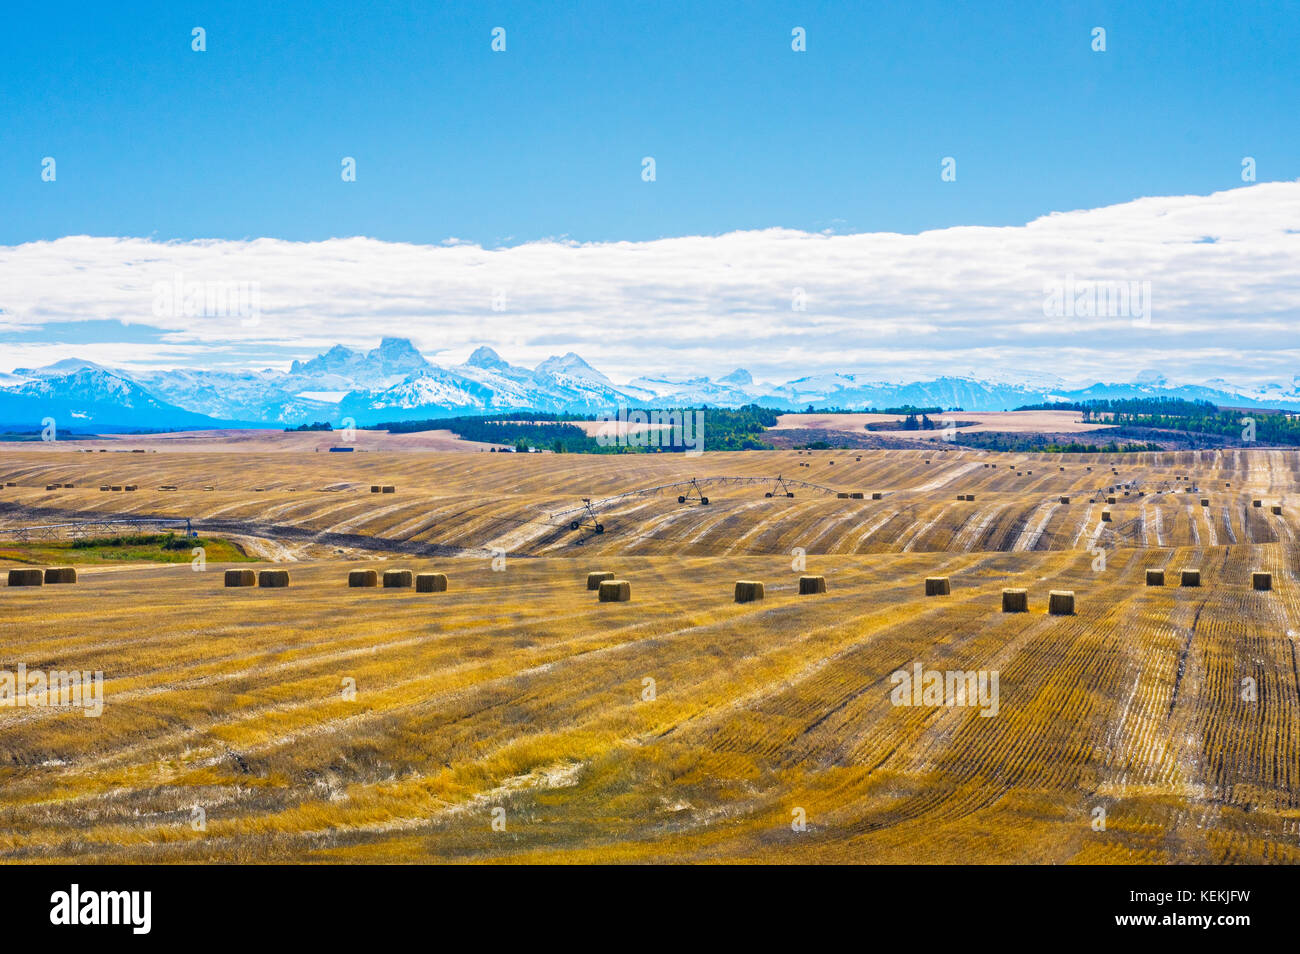 Felder und Farm land Mark die Idaho Landschaft für die Meilen mit dem imposanten Grand Teton Berge in der Ferne Horizont. Stockfoto